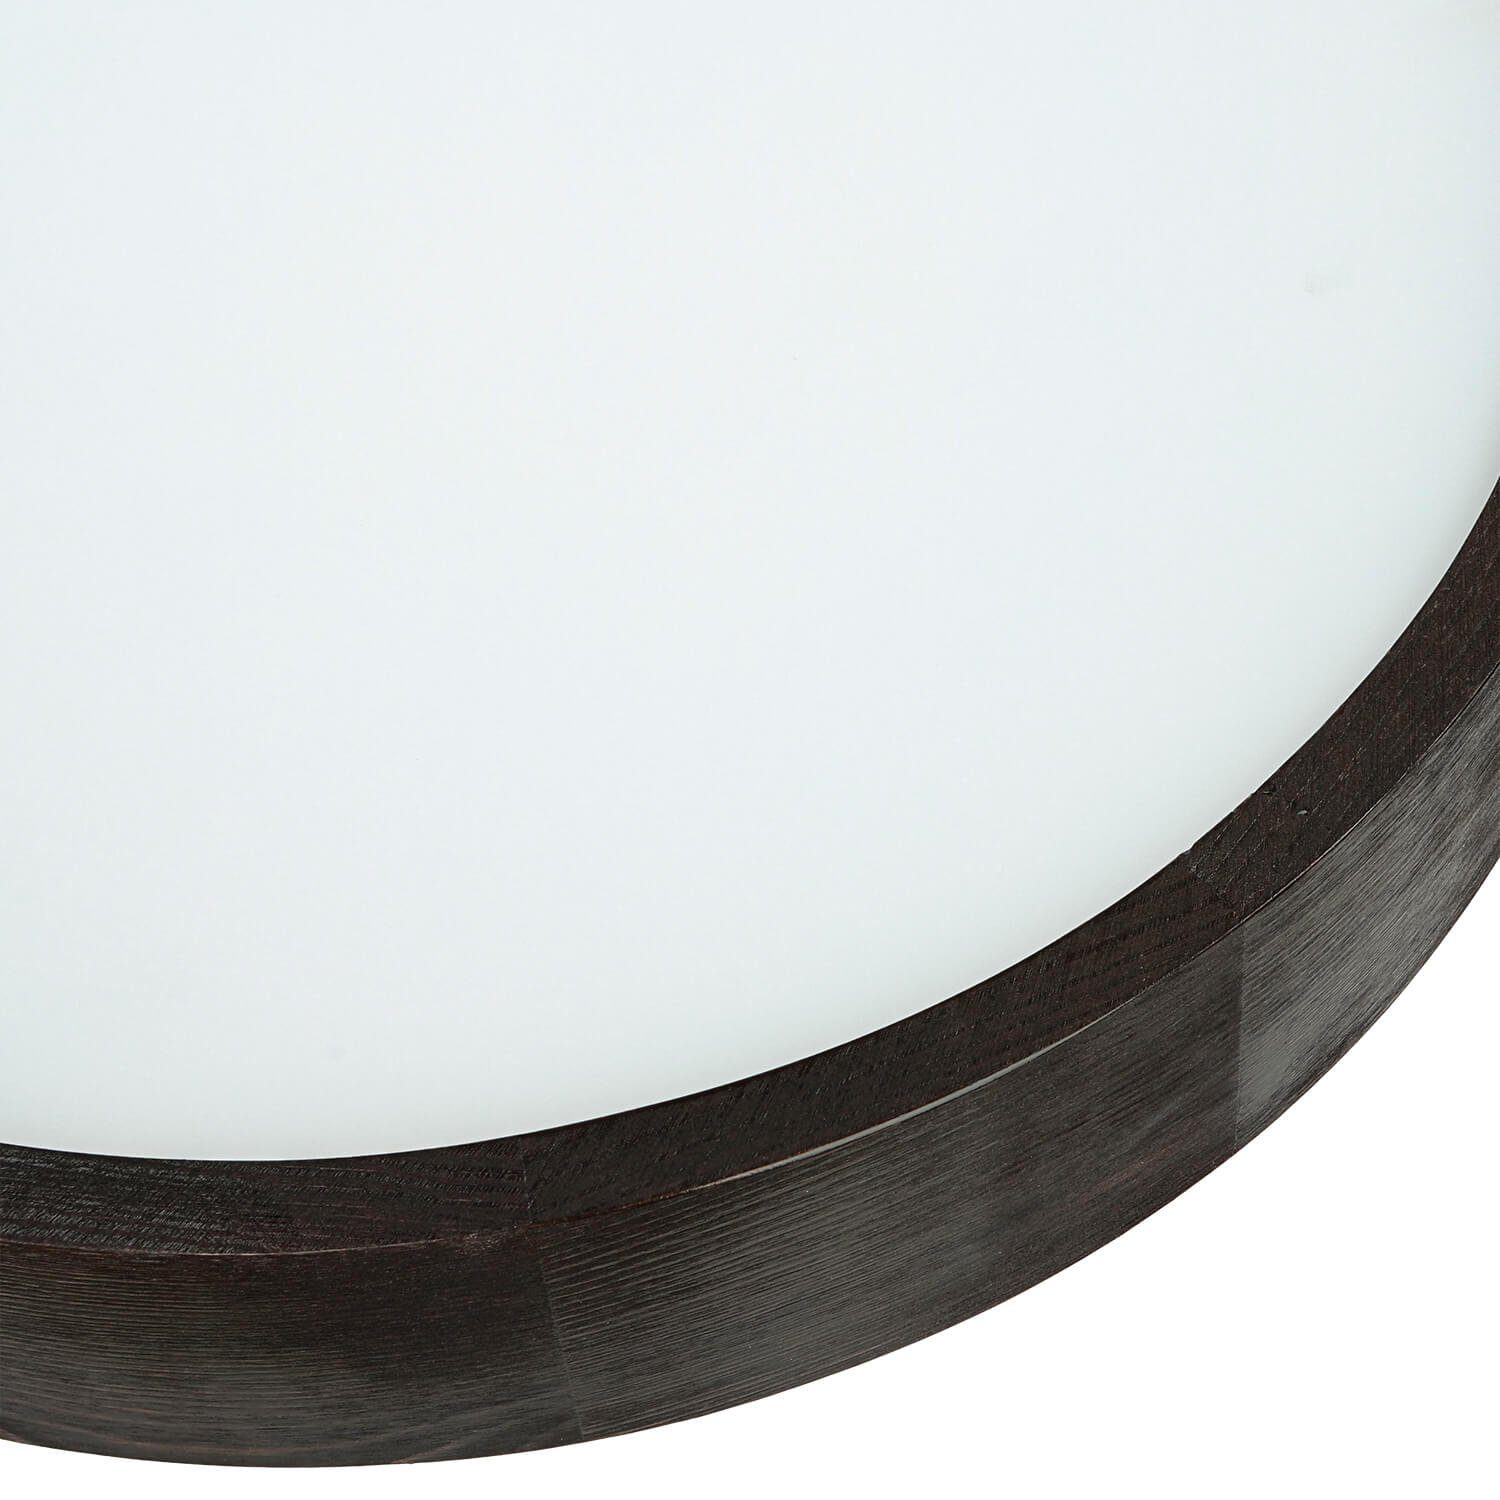 ARBARO, Braune Wohnzimmer Licht-Erlebnisse ohne modern blendarm Leuchtmittel, Deckenleuchte Holz rund Glas Deckenlampe